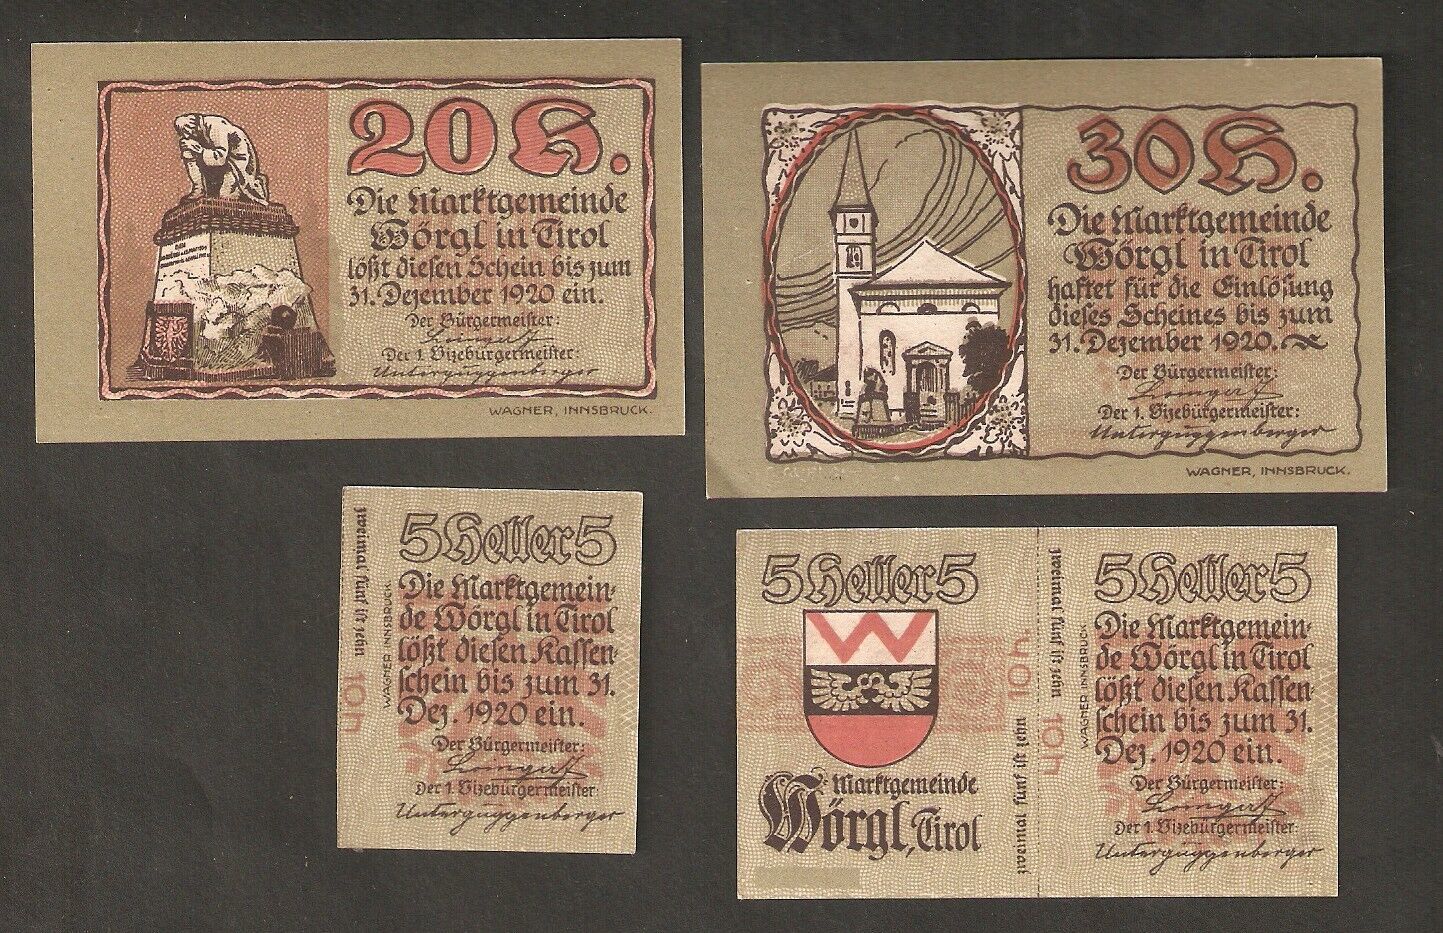 AUSTRIA WORGL in TIROL 40 & 30 & 20 & 10 heller 1920 2 auflage Notgeld banknotes - $14.71